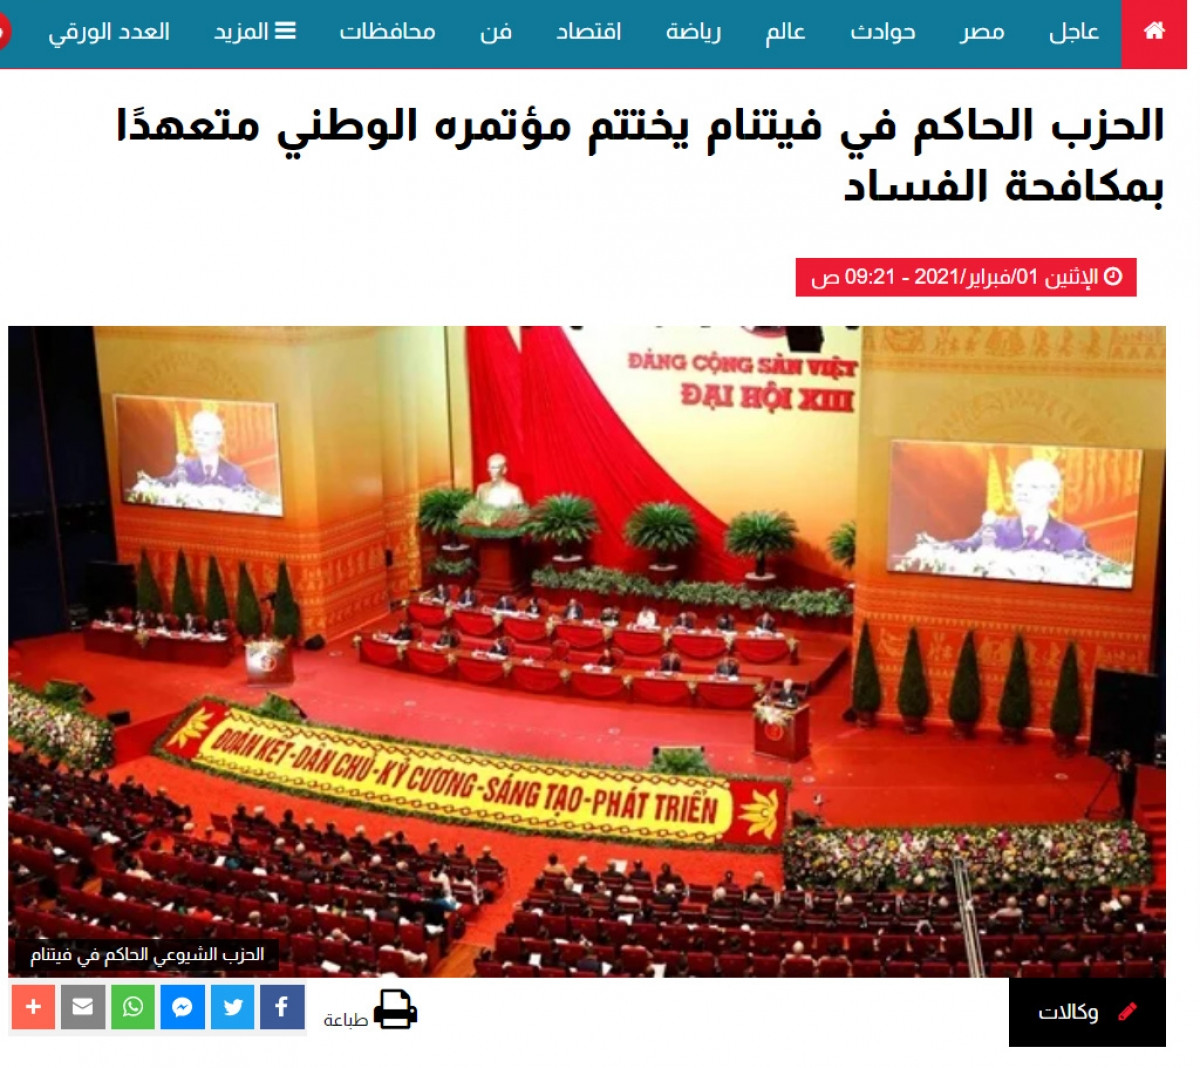 Bài viết trên báo “Hiến pháp” với tiêu đề “Đảng Cộng sản Việt Nam bế mạc Đại hội đại biểu toàn quốc với cam kết chống tham nhũng”.